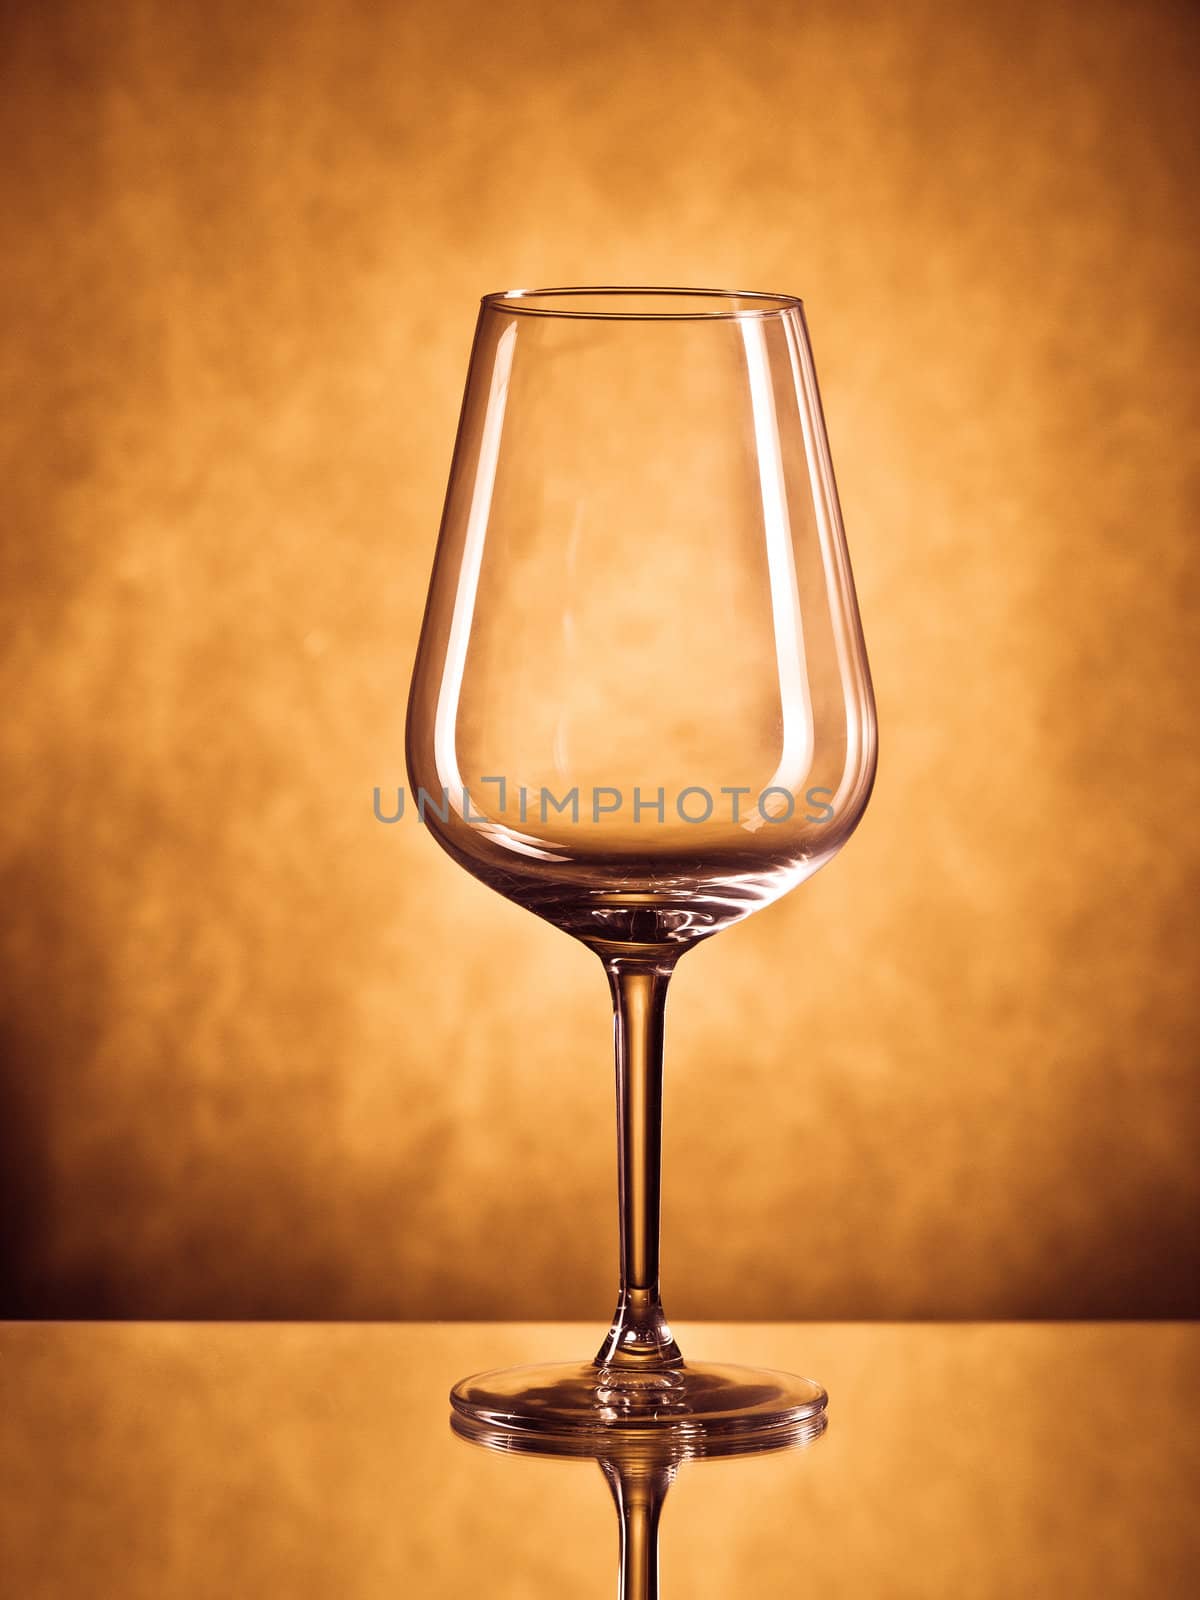 Wine glass by Alex_L